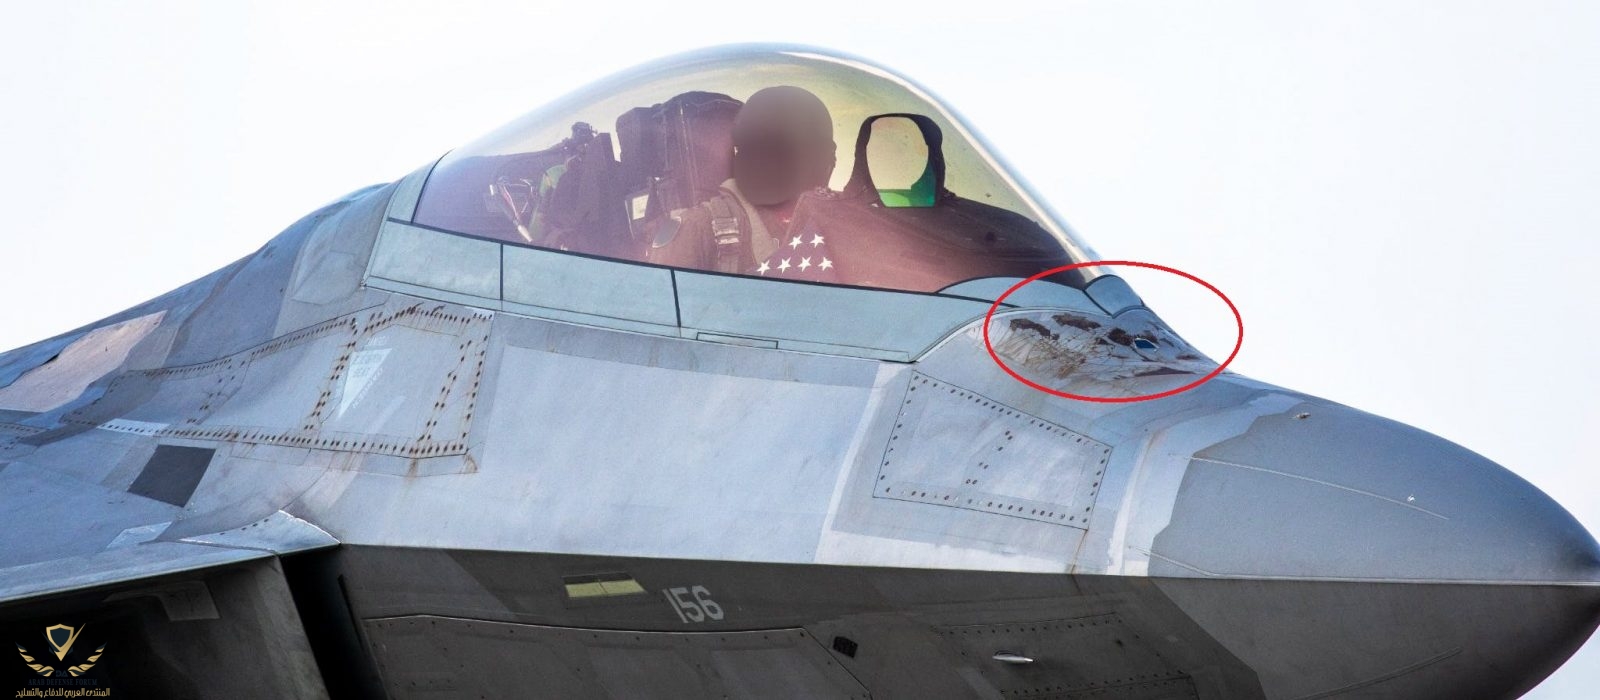 F-22-Raptor-Losing-Radar-Absorbent-Coating.jpg